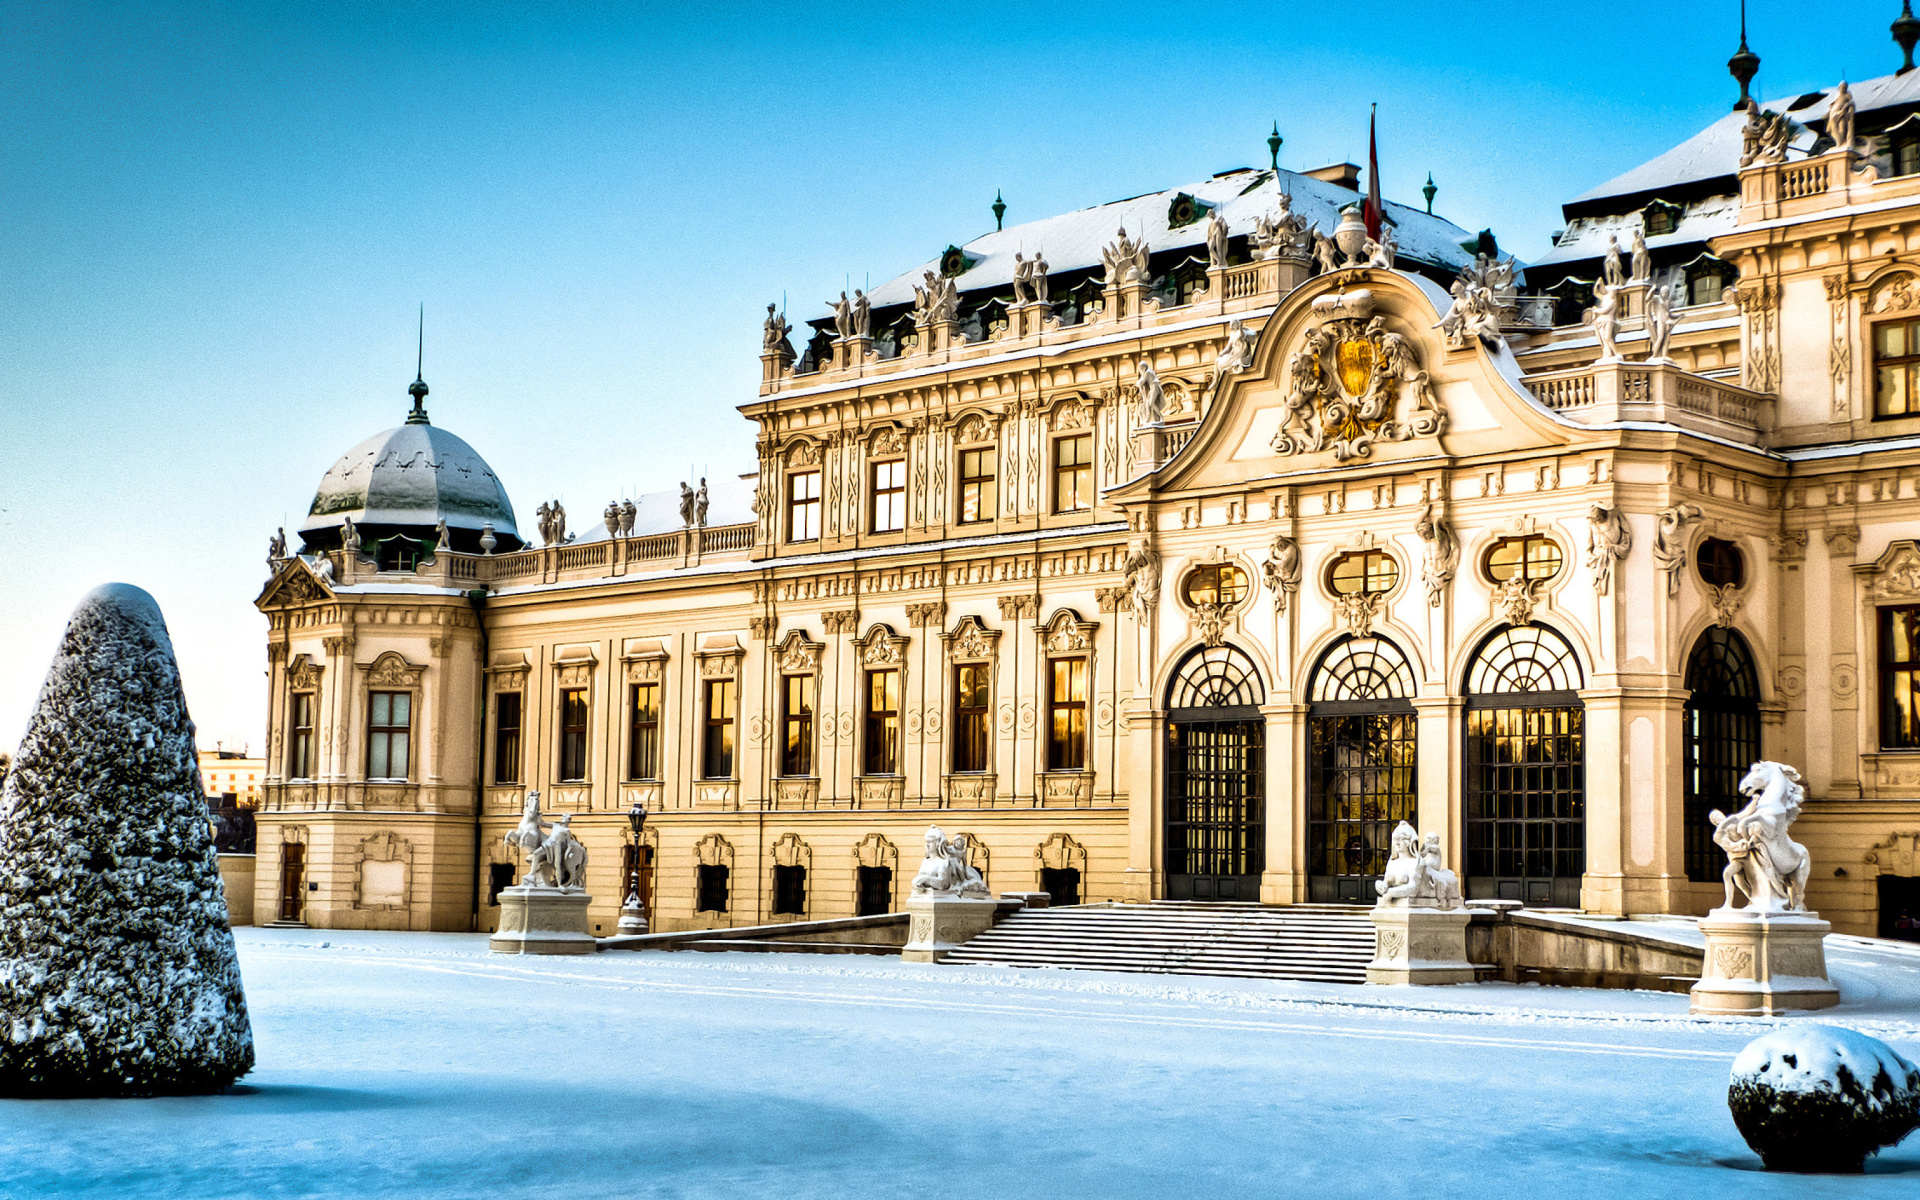 Belvedere Baroque Palace in Vienna, Austria